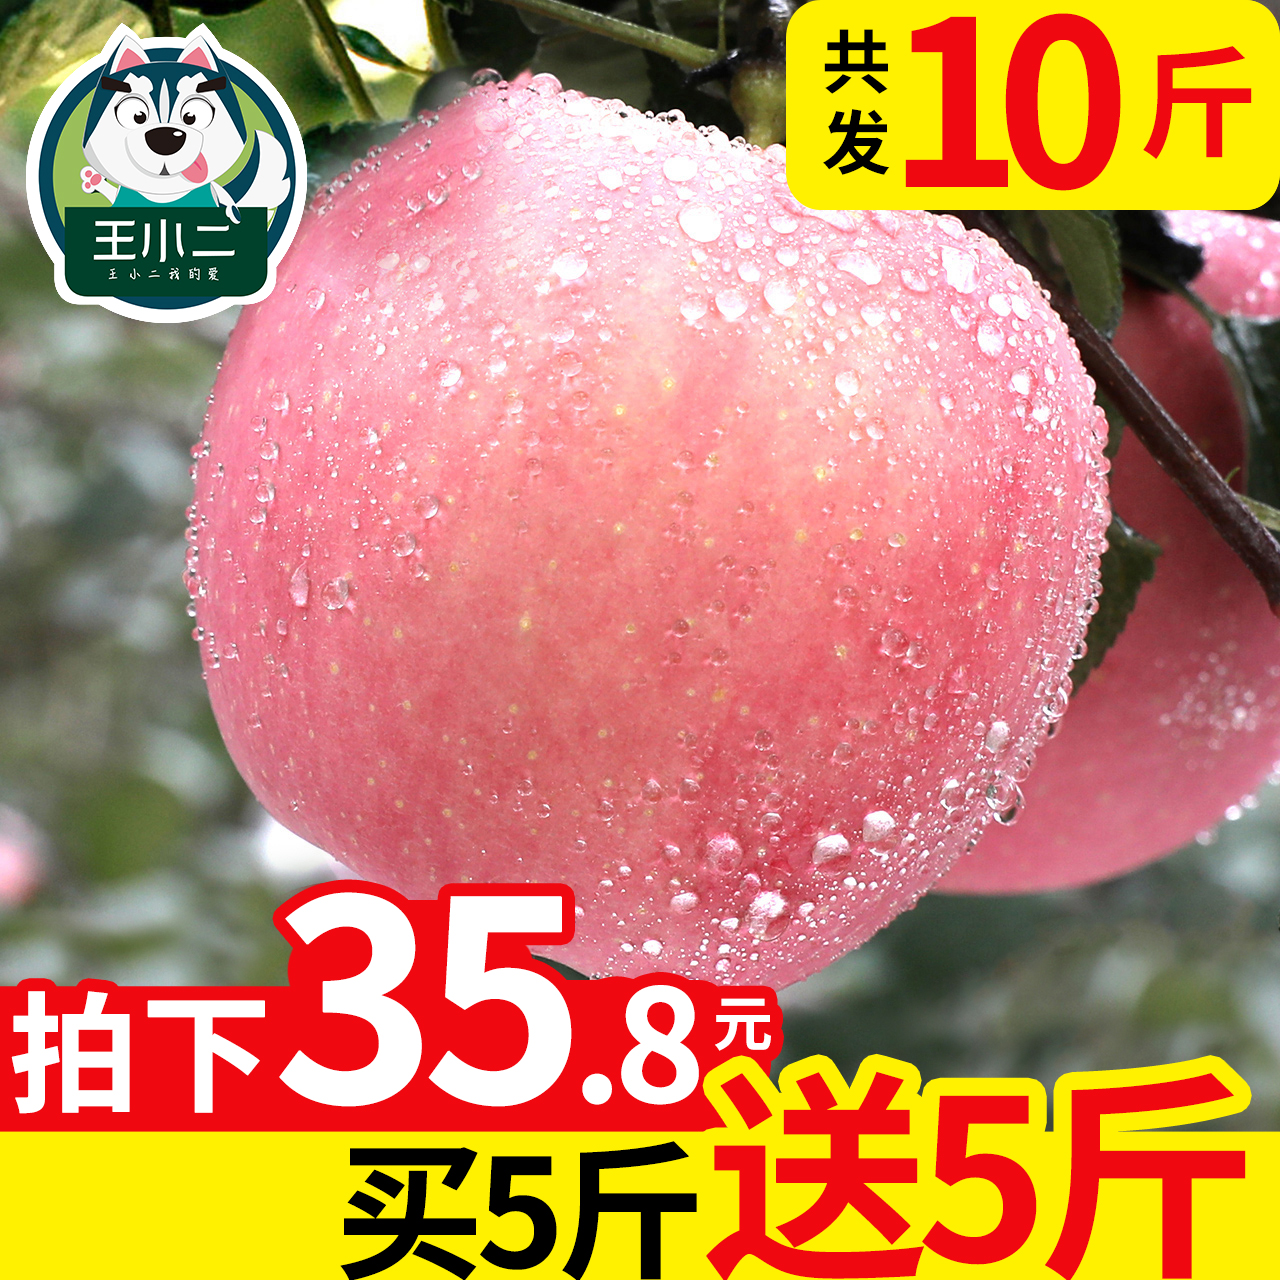 【买一送一】王小二红富士苹果水果新鲜整箱10斤当季包邮吃的萍果